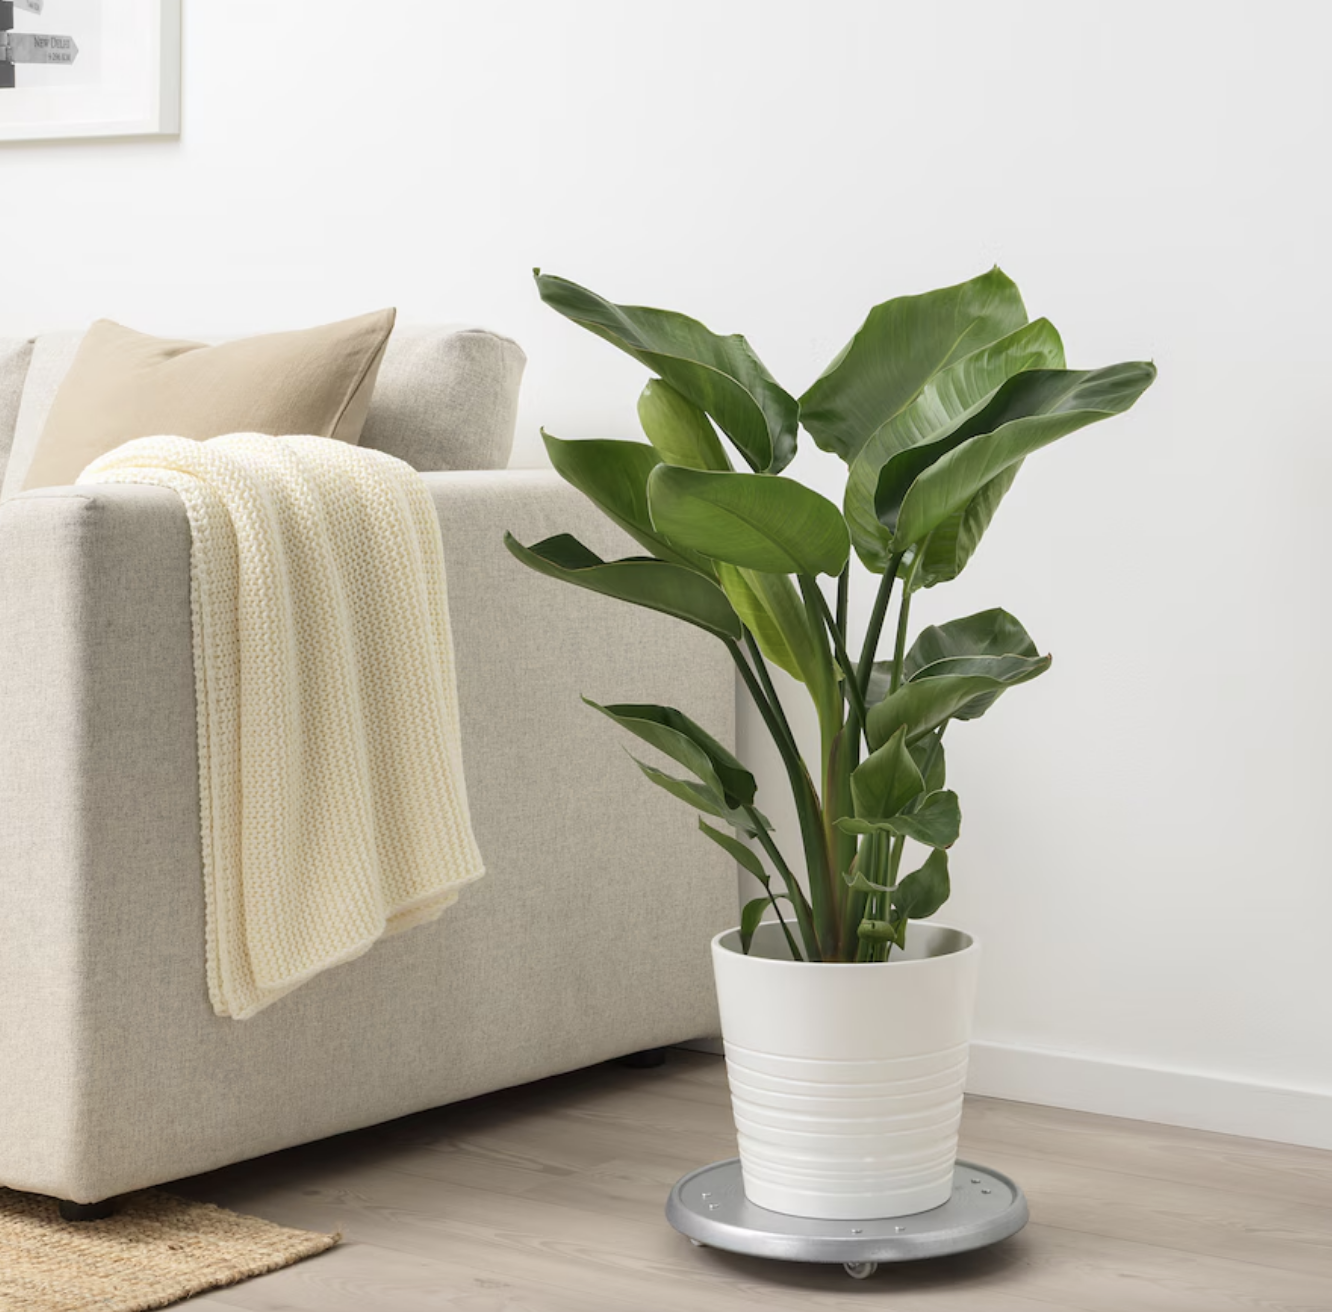 La planta que necesitas en tu hogar es de IKEA.